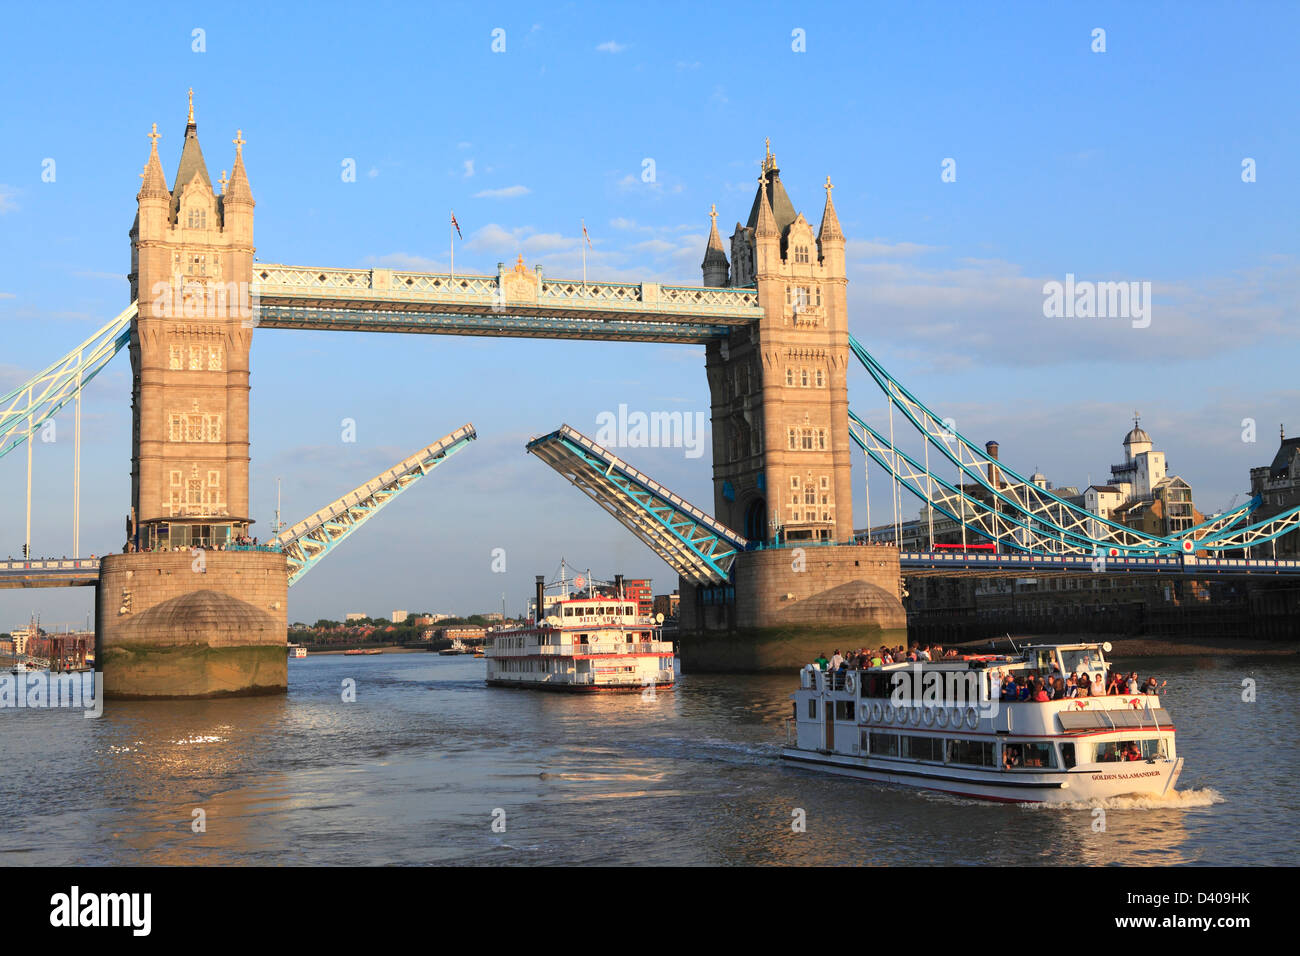 Tower Bridge ouvrir avec plaisir en passant par bateau de croisière, Tamise, Londres, Angleterre, Royaume-Uni, Grande Bretagne, FR Banque D'Images